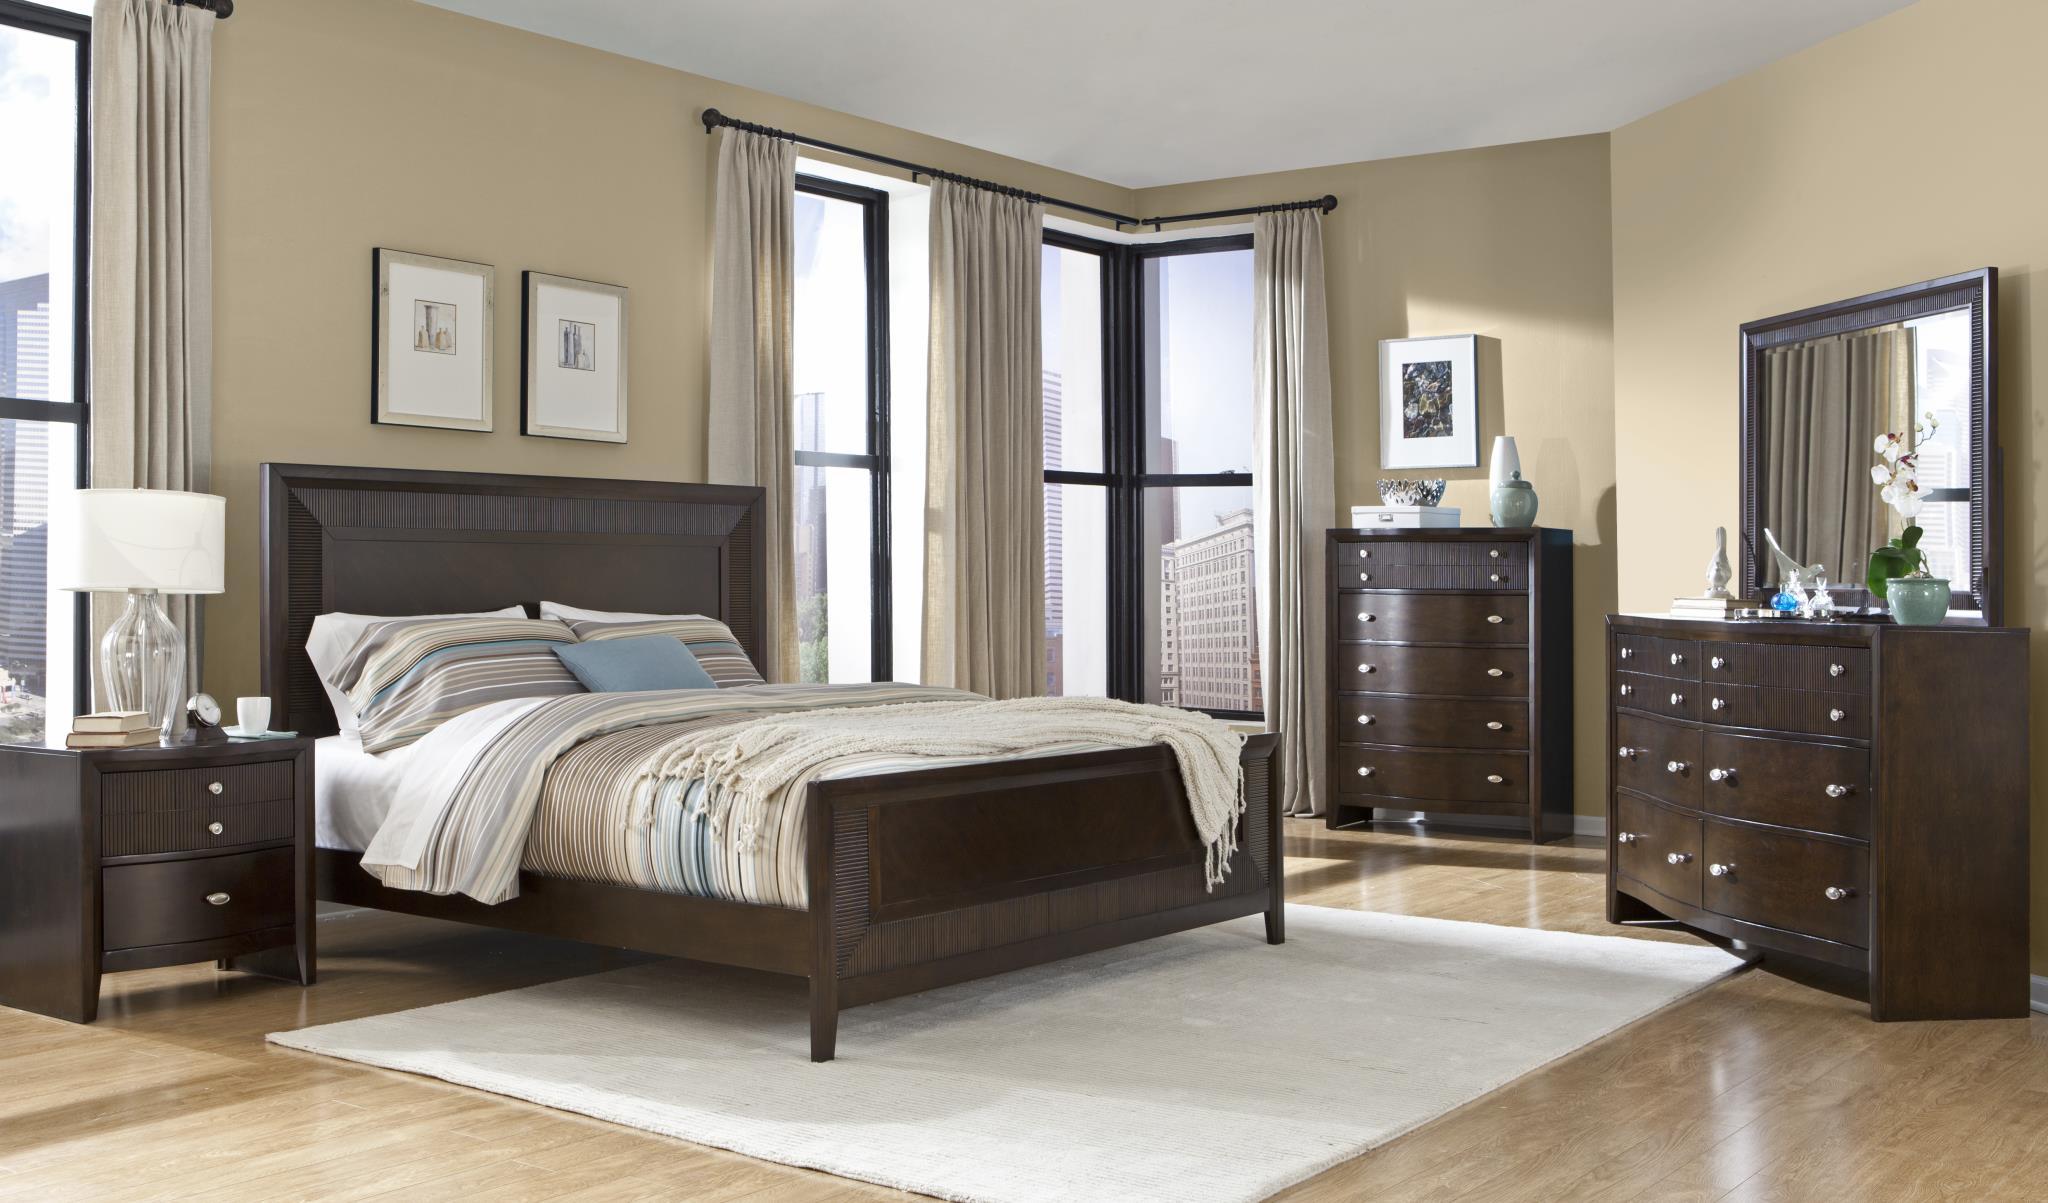 

    
MYCO Furniture EM3110Q Empire Espresso Finish Ribbed Wood Queen Panel Bedroom Set 2Pcs
